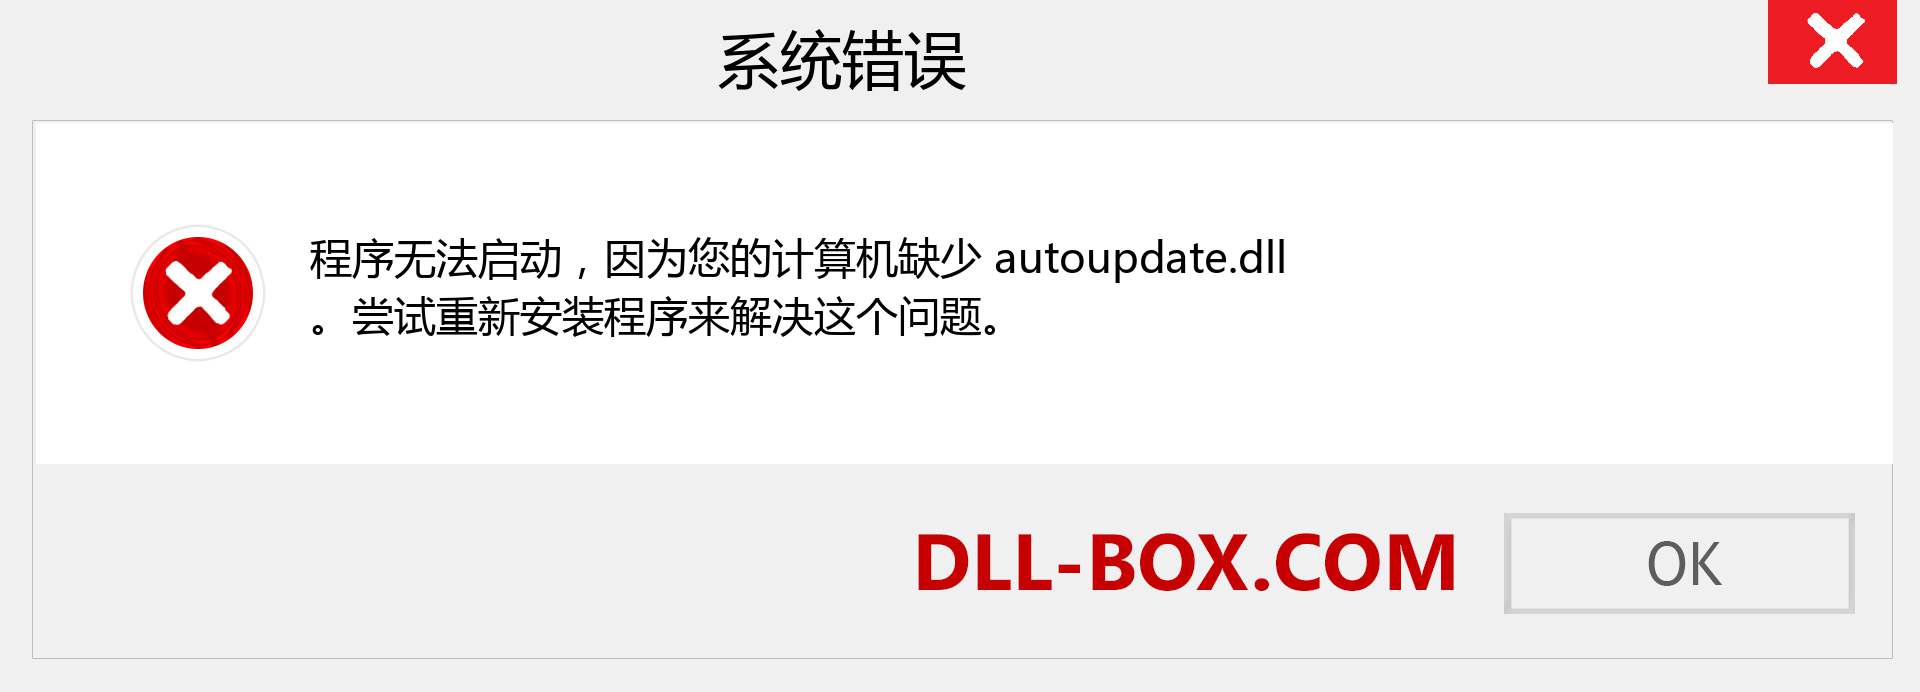 autoupdate.dll 文件丢失？。 适用于 Windows 7、8、10 的下载 - 修复 Windows、照片、图像上的 autoupdate dll 丢失错误